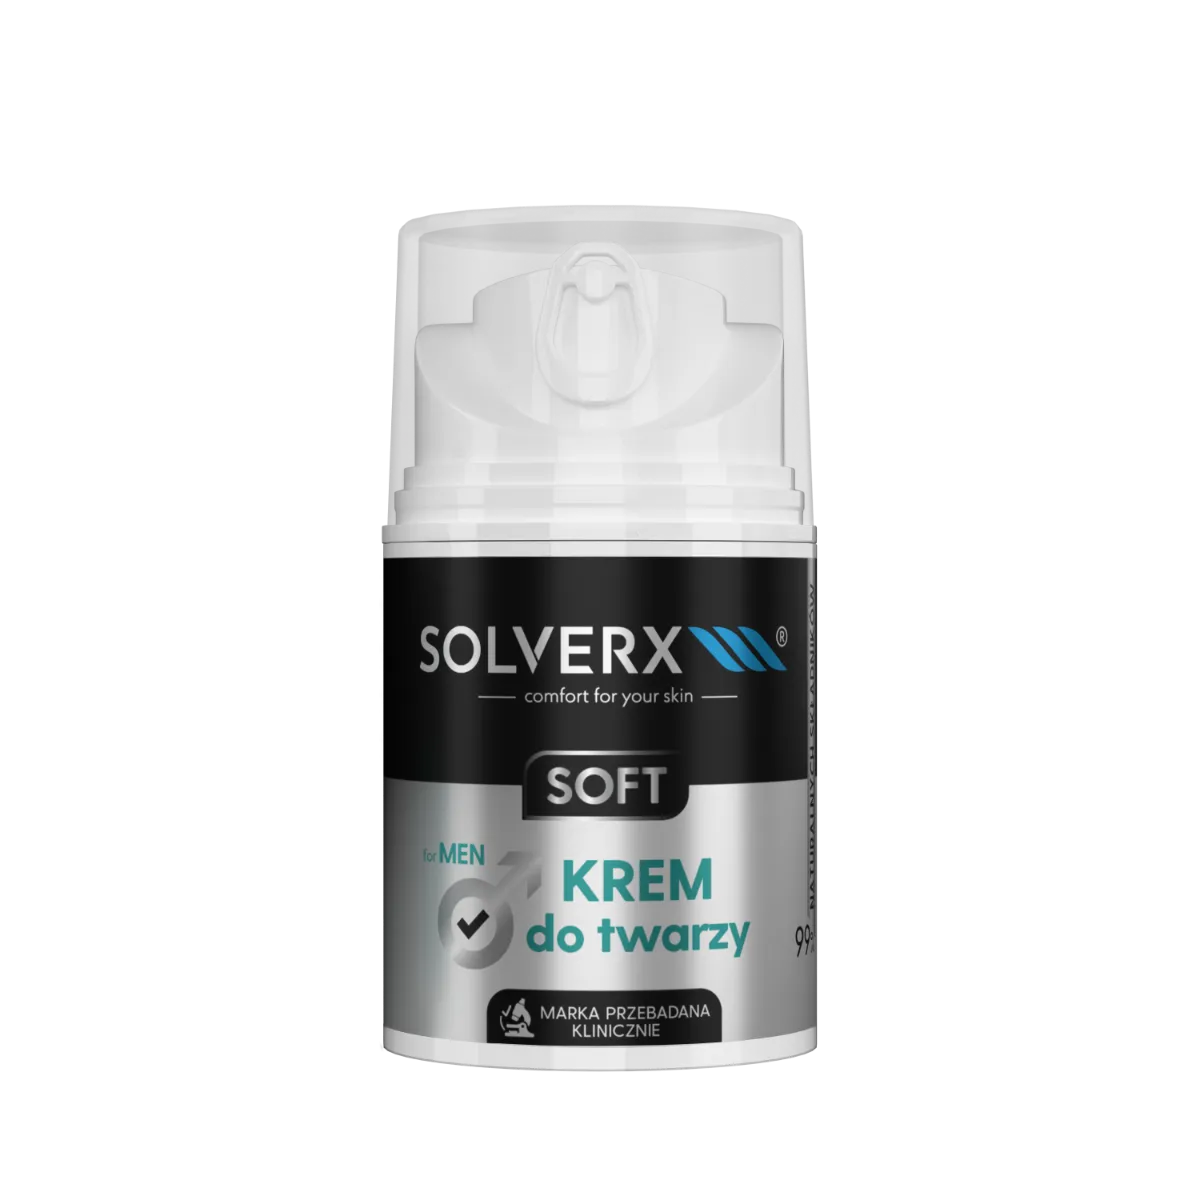 Solverx Soft Men krem do twarzy dla mężczyzn, 50 ml